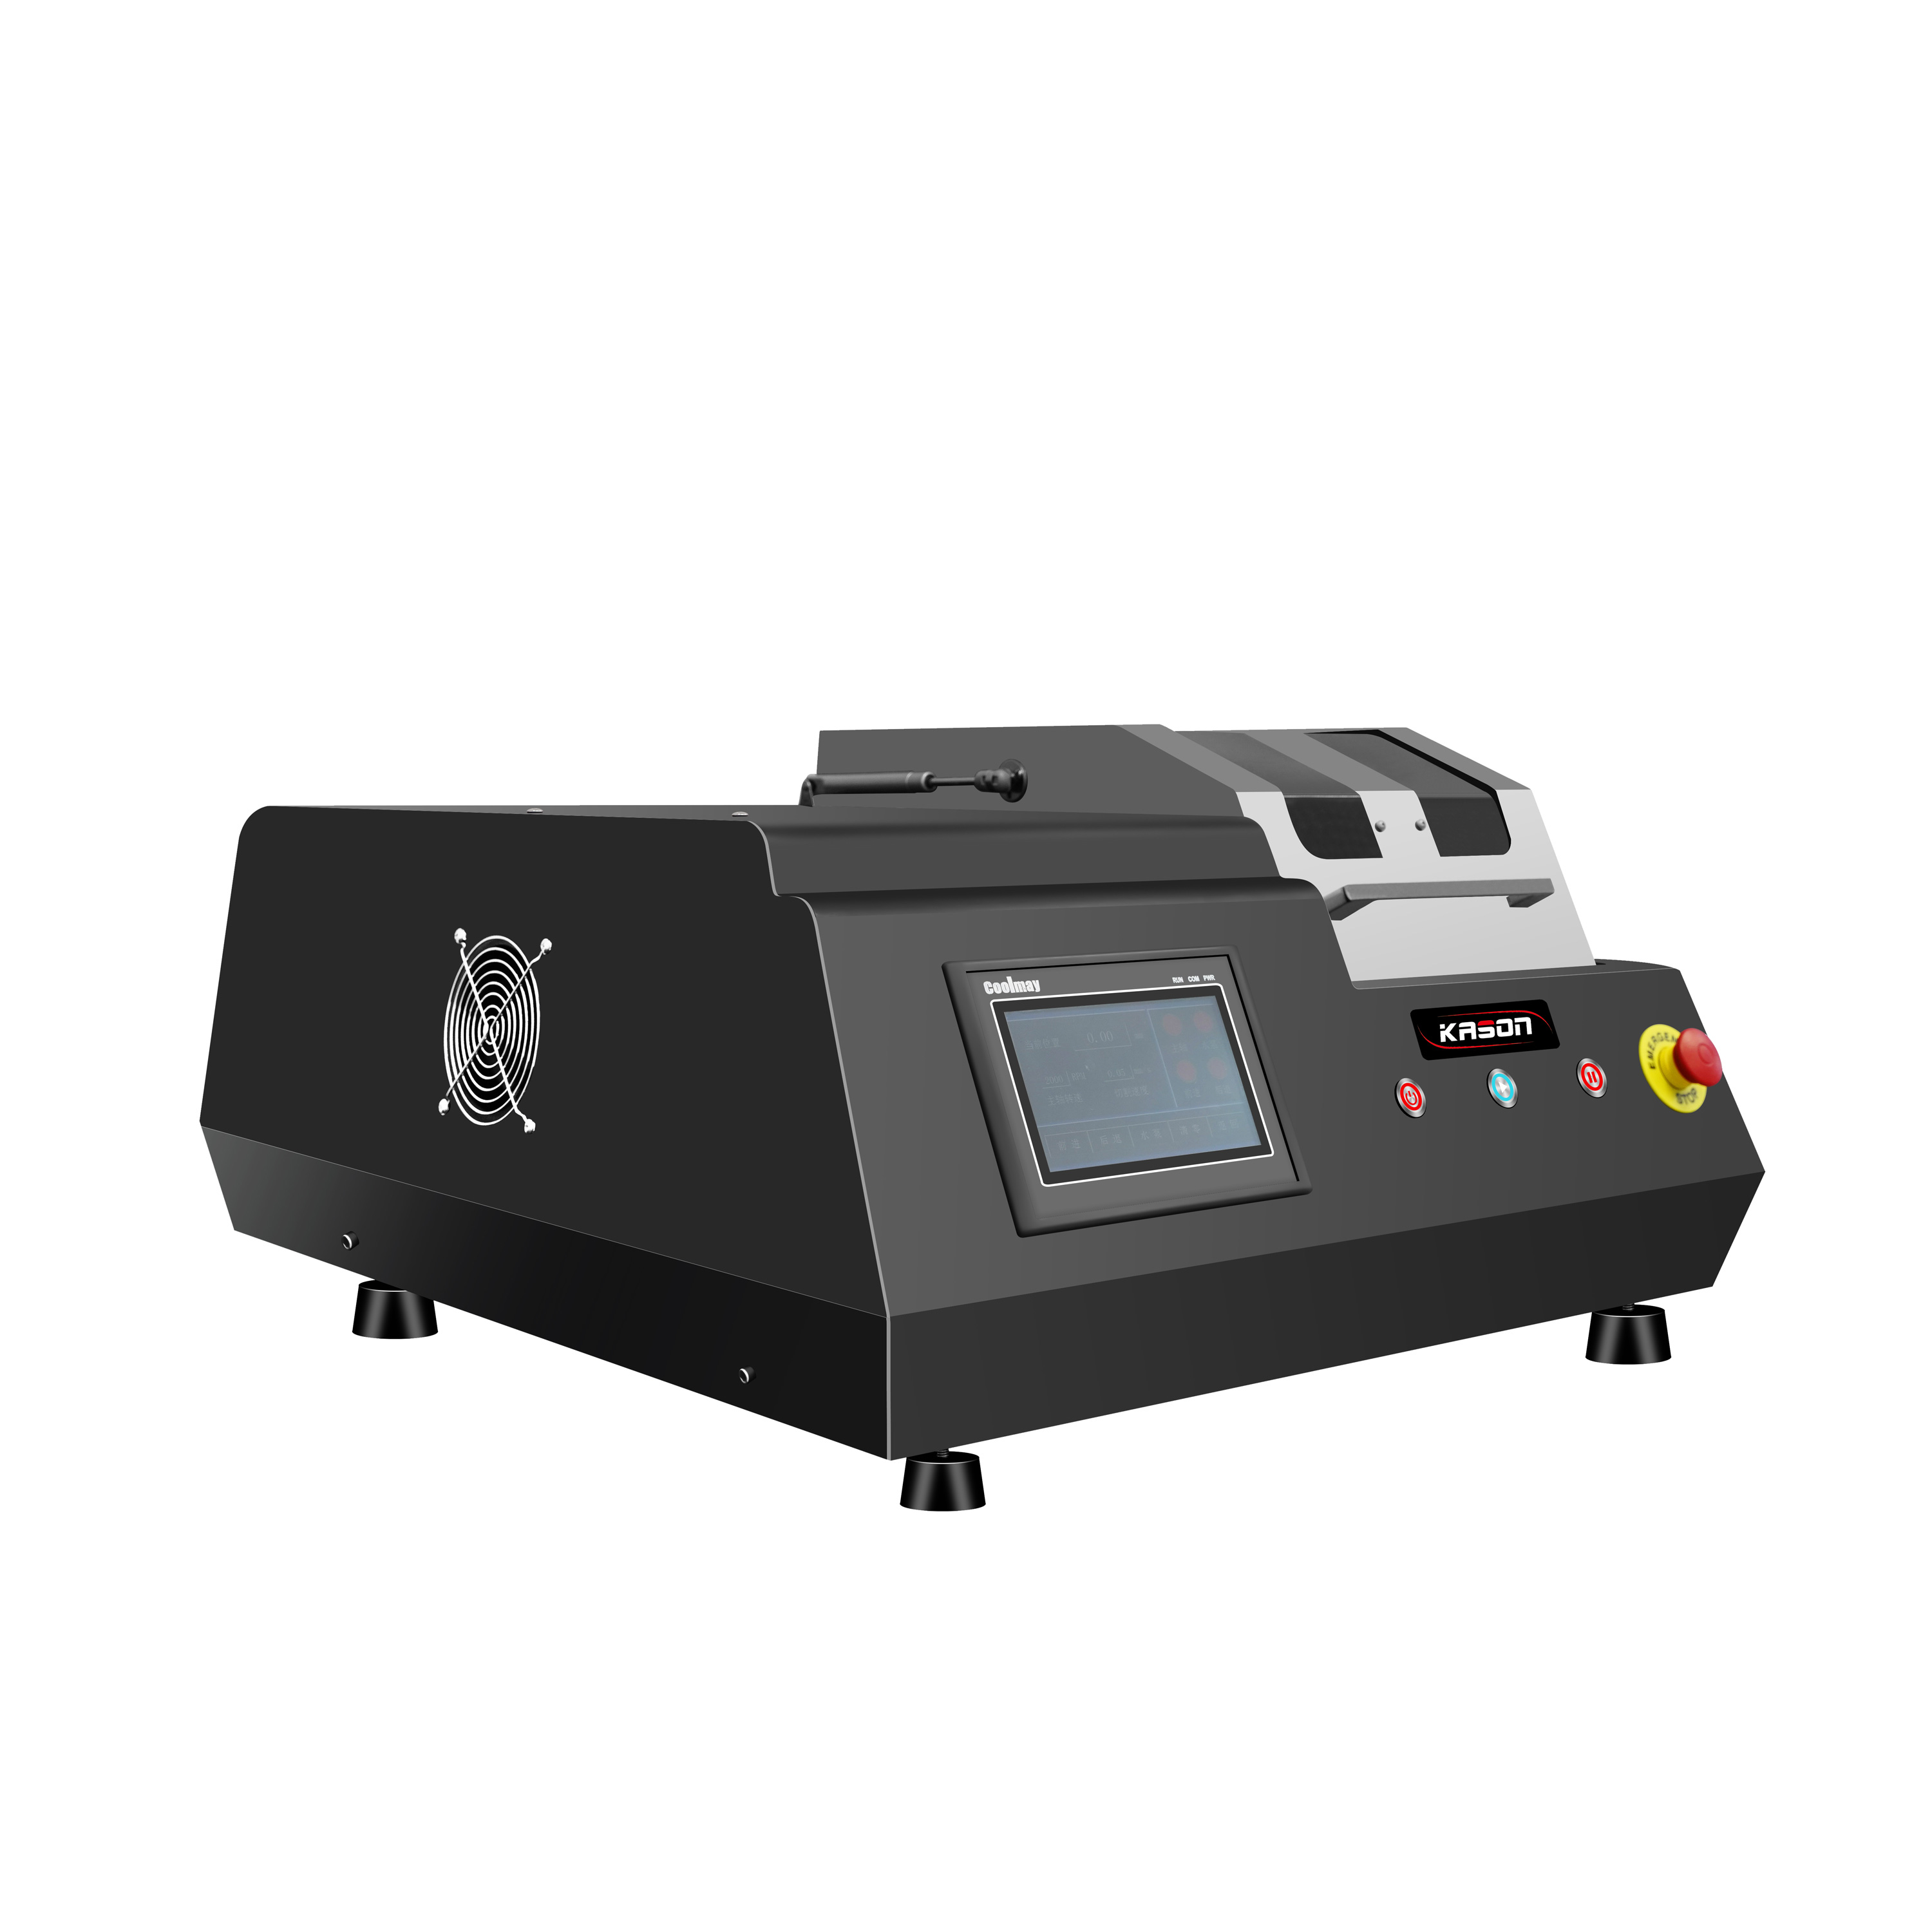 KSCUT5000-G Specimen Precision Cutting Machine